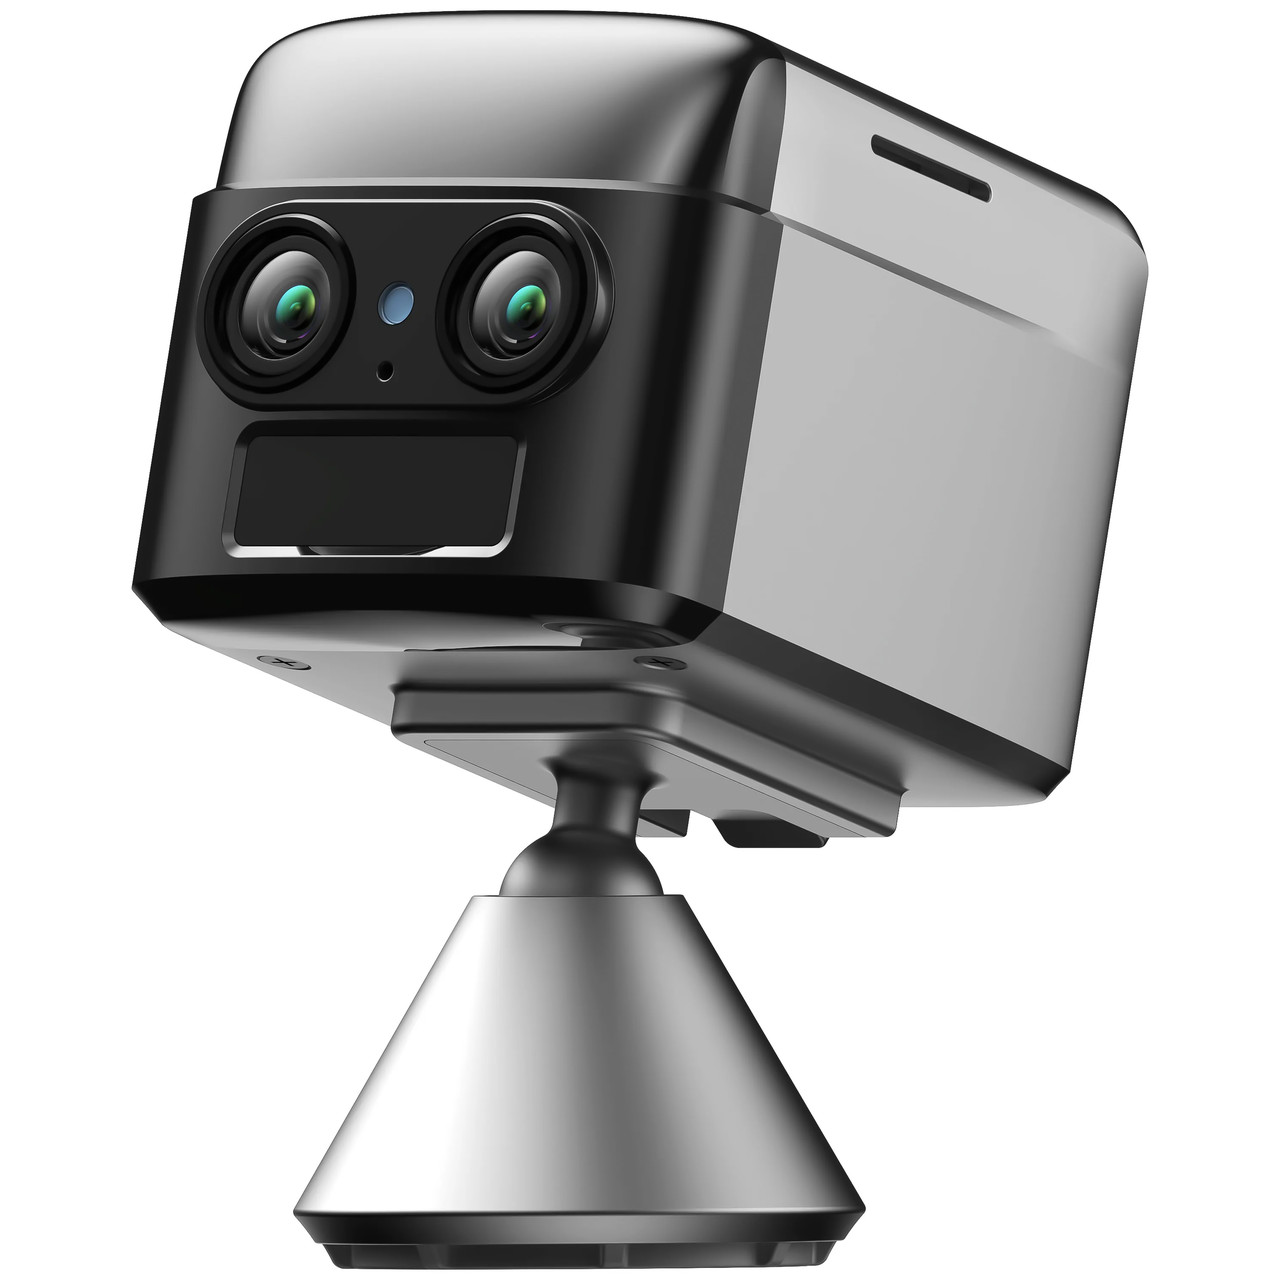 WiFi міні камера відеоспостереження Camsoy S70W, з подвійною лінзою та датчиком руху, до 70 днів автономної роботи, iOS/Android,